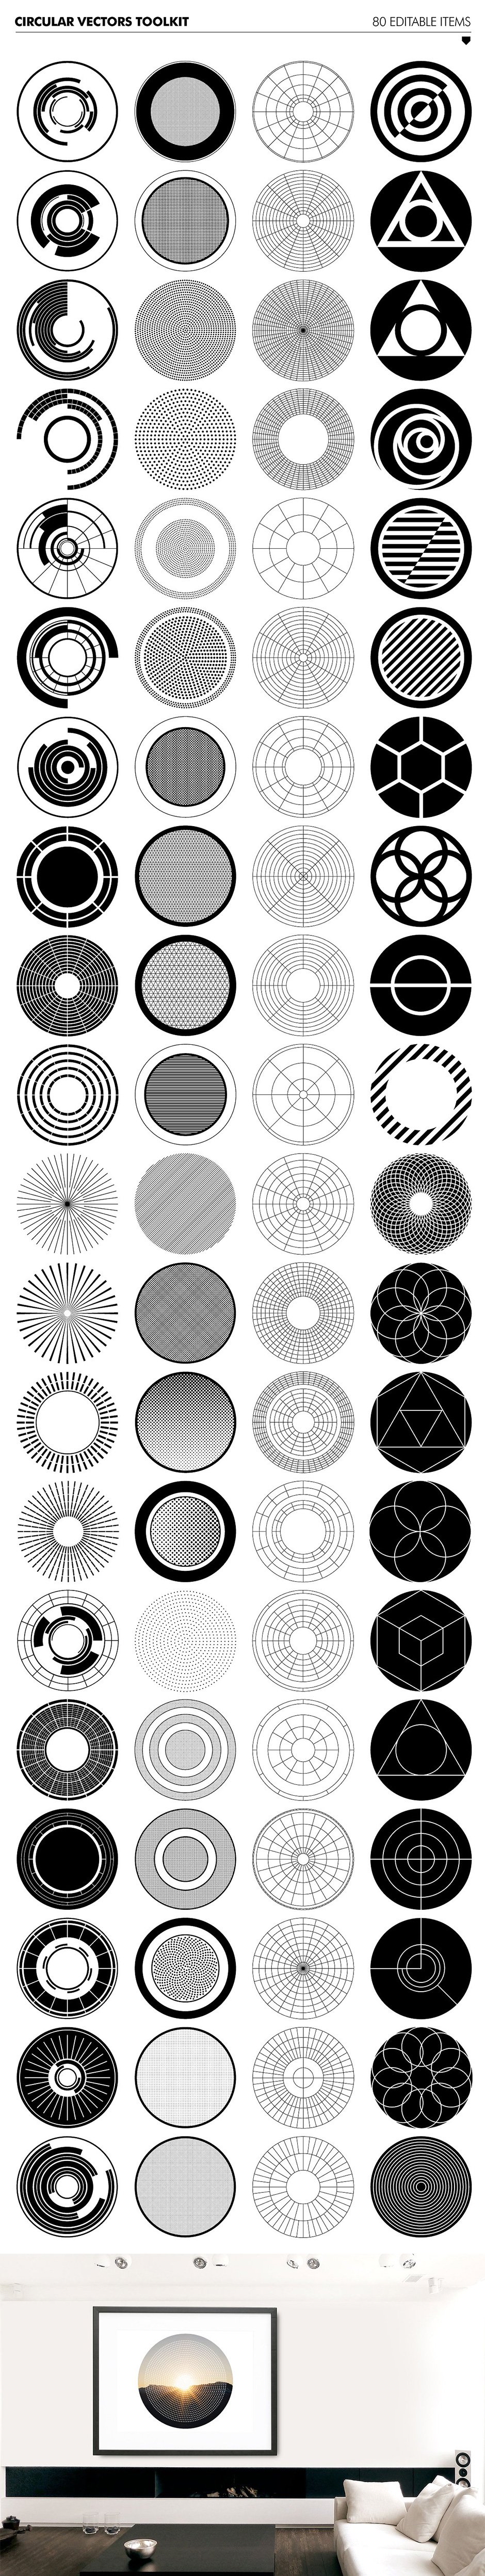 circular vectors